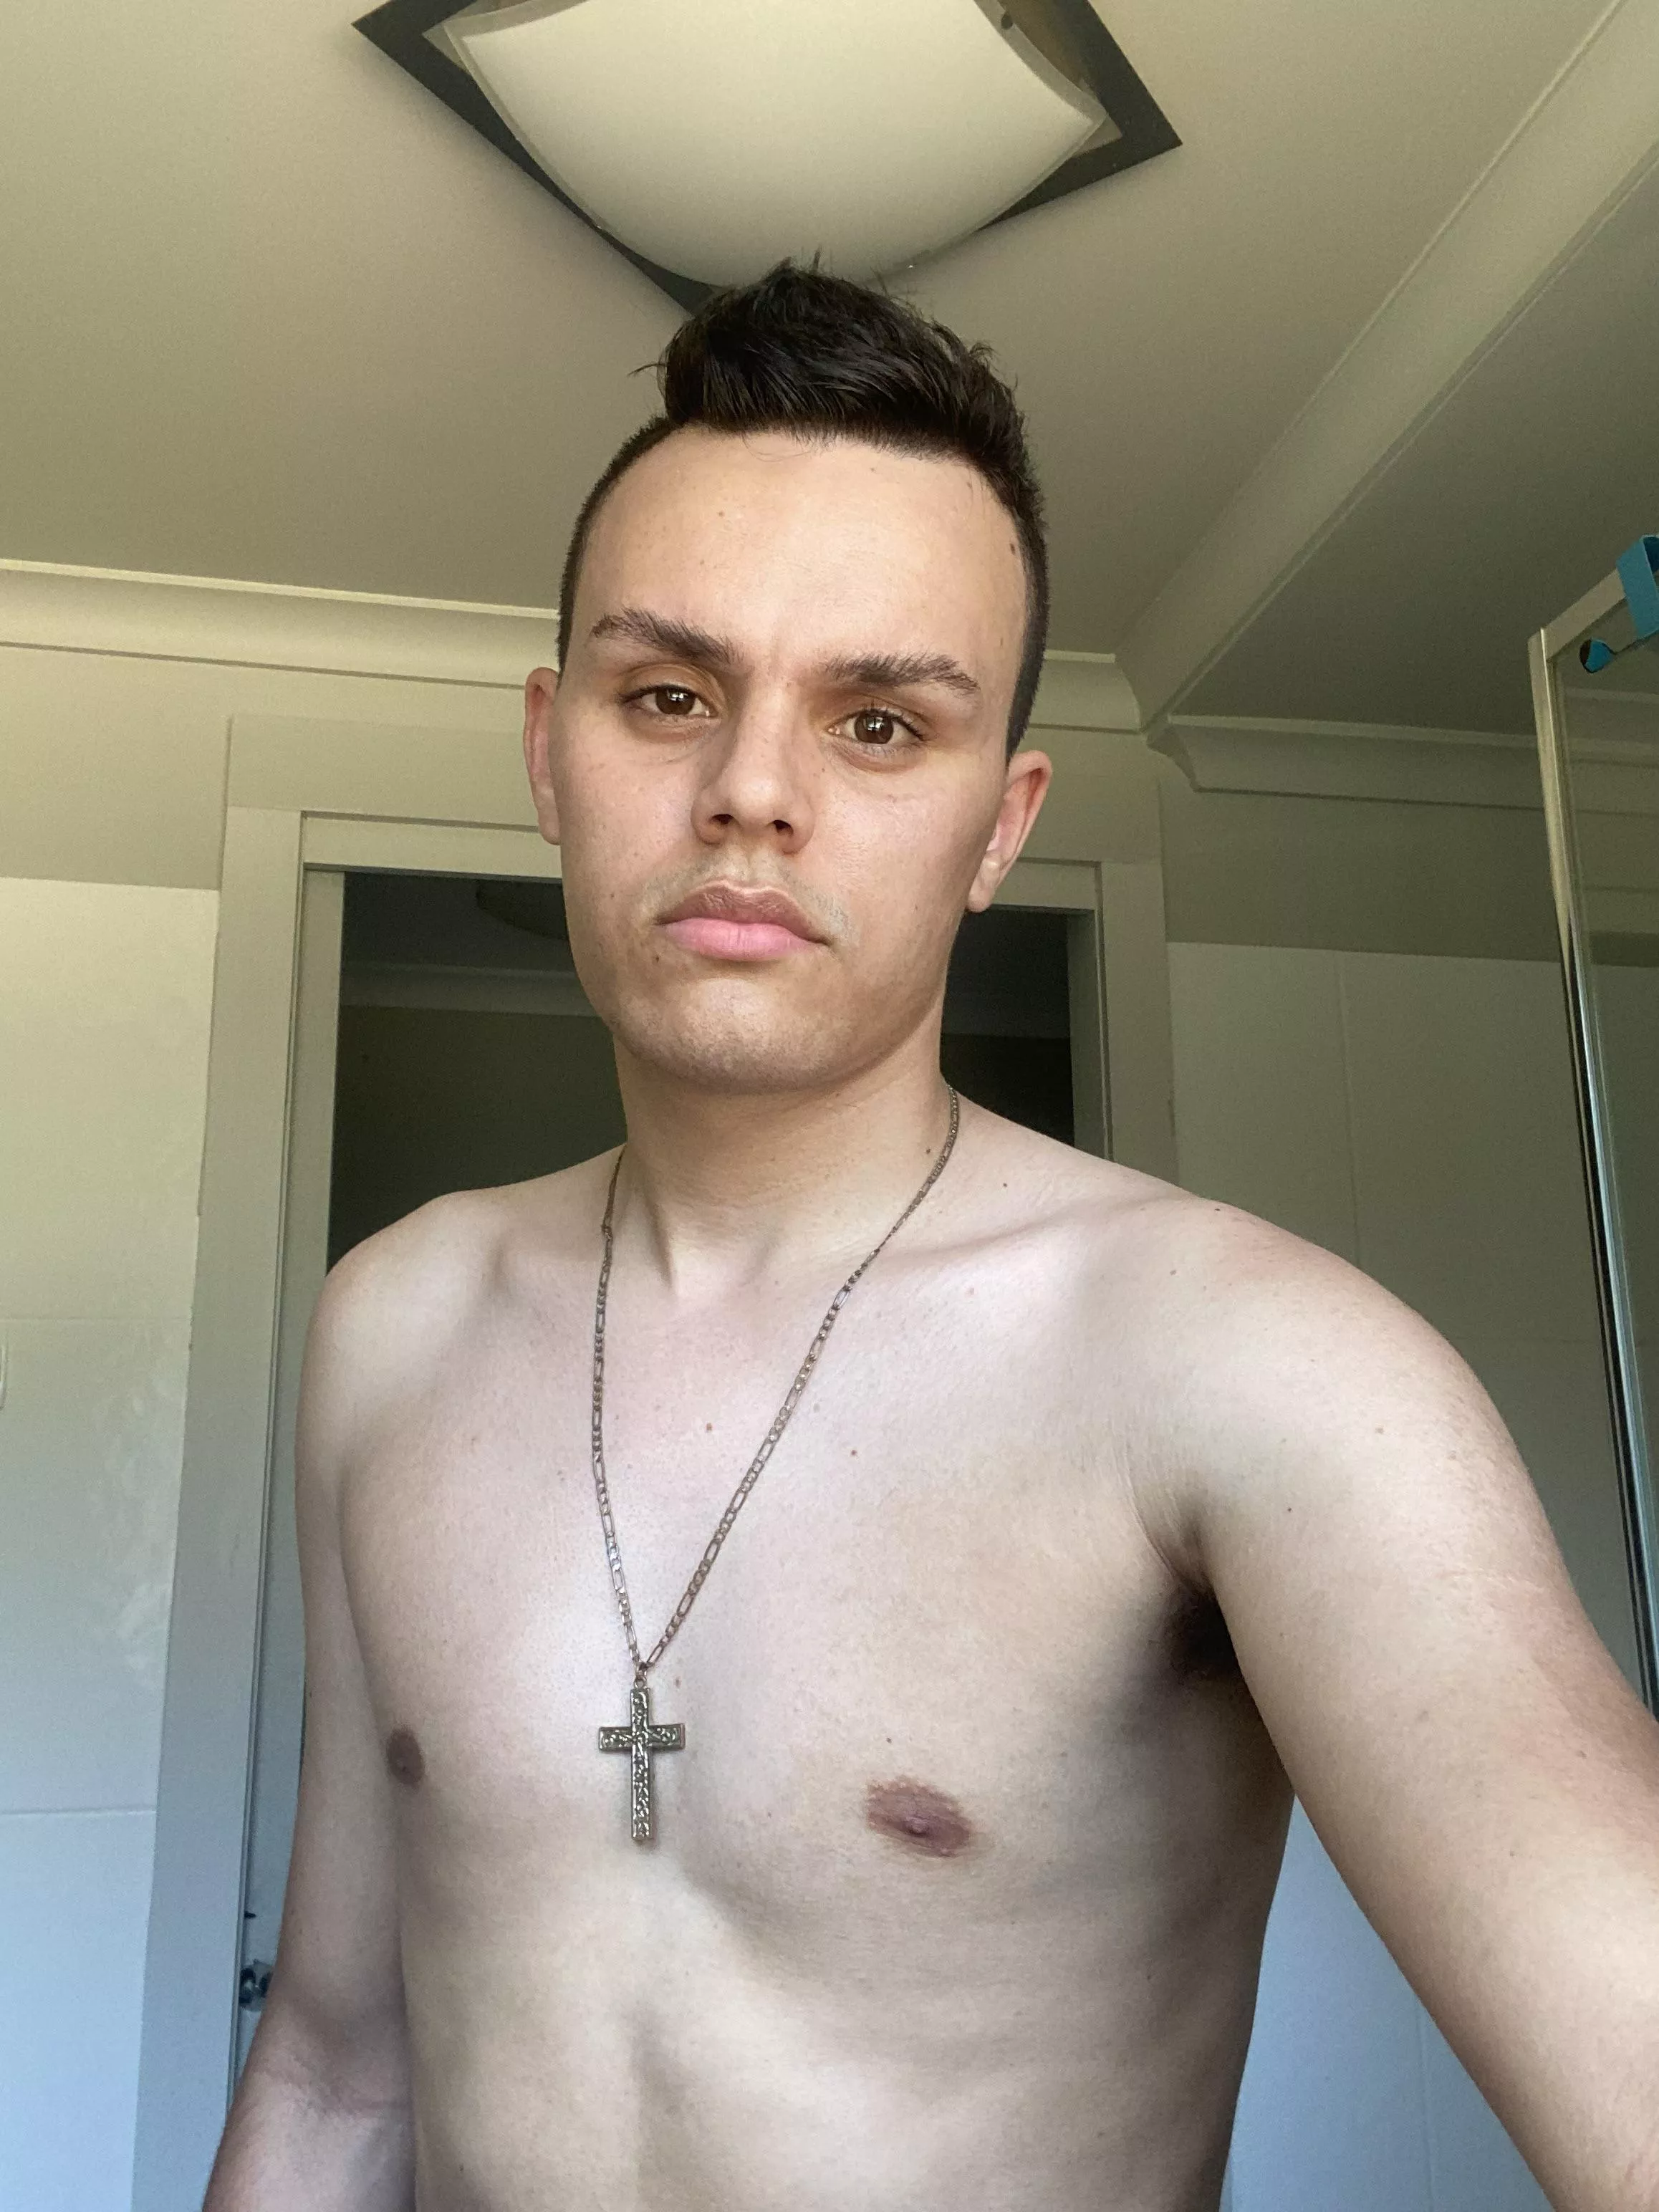 24 Australia Nudes Gayselfies Nude Pics Org